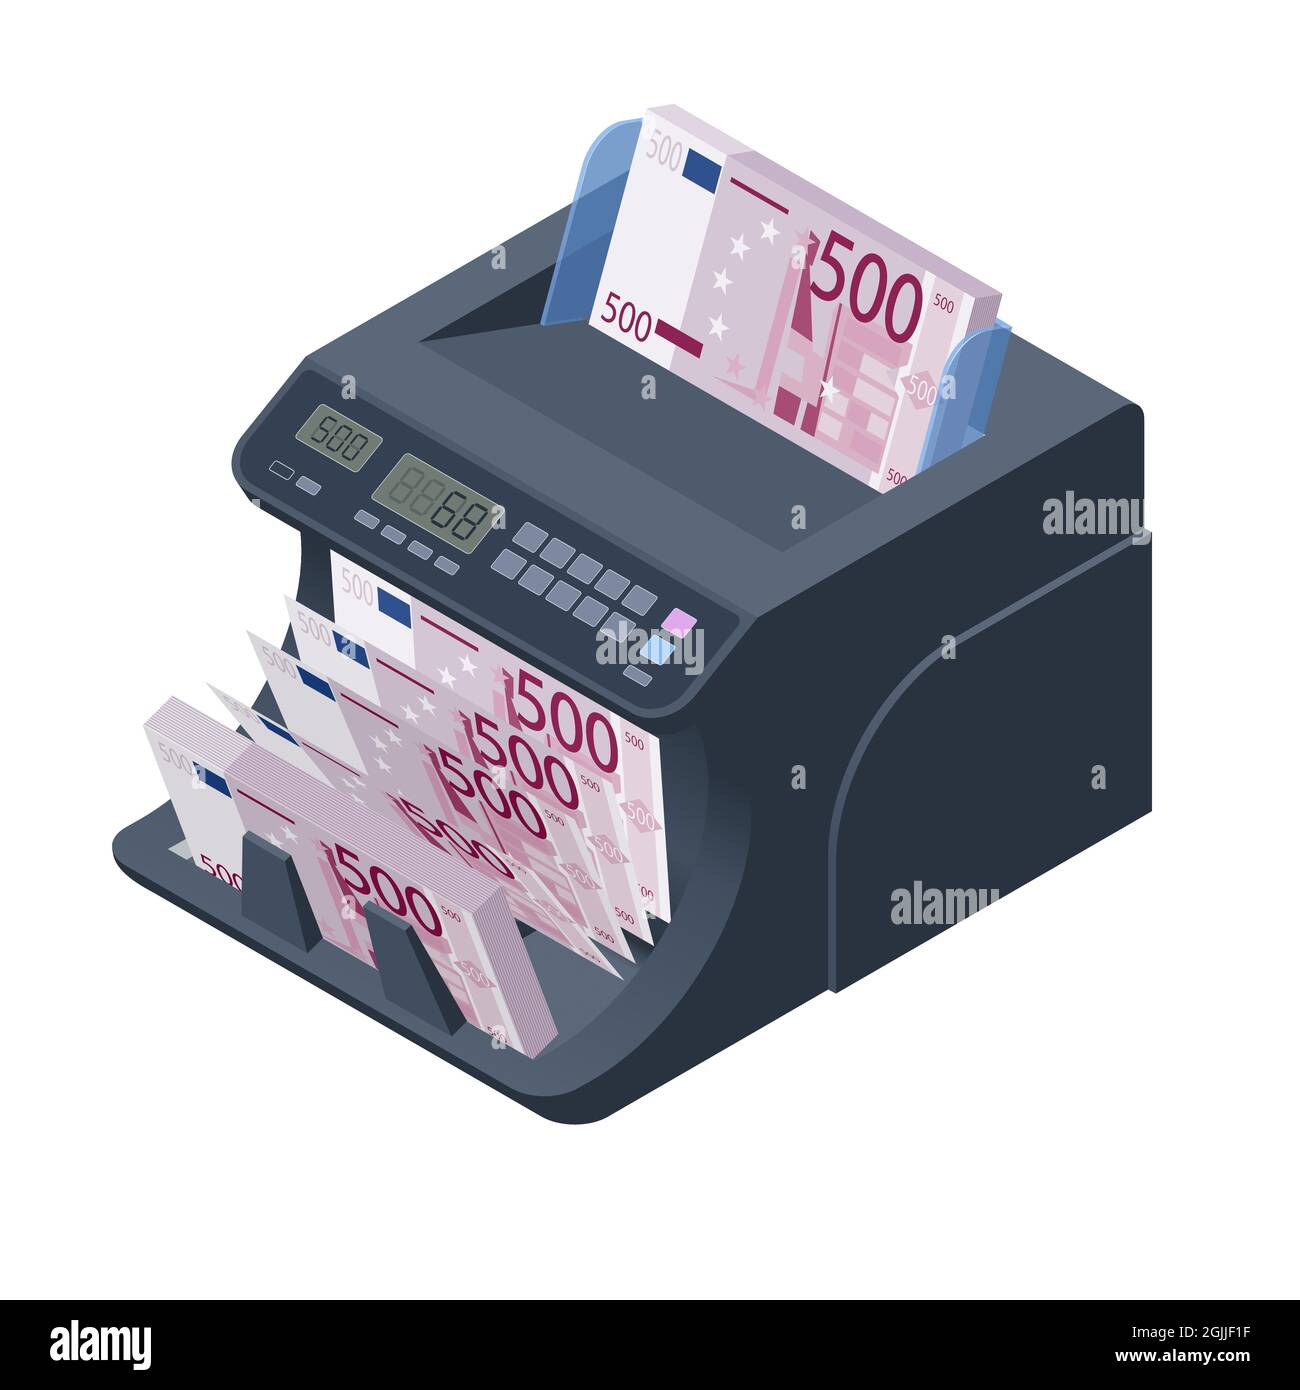 Isometrische Geldzählmaschine. Das LED-Display zeigt die Anzahl der  Rechnungen an. Digitaler Euro EUR elektronischer Geldzähler  Währungszählmaschinen mit Stock-Vektorgrafik - Alamy